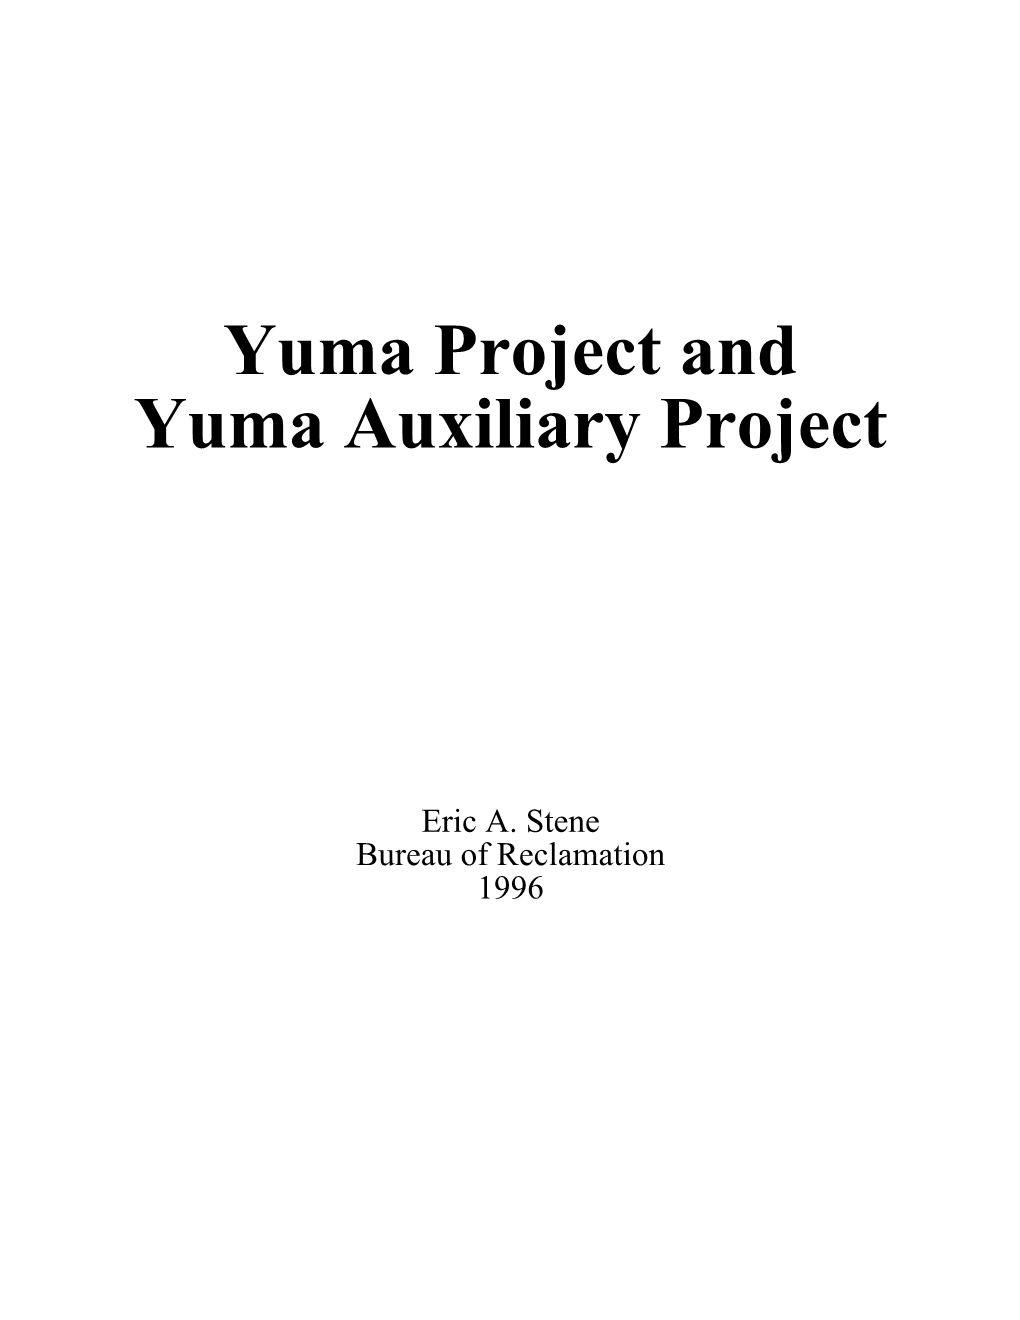 Yuma Project/Yuma Aux. Proj